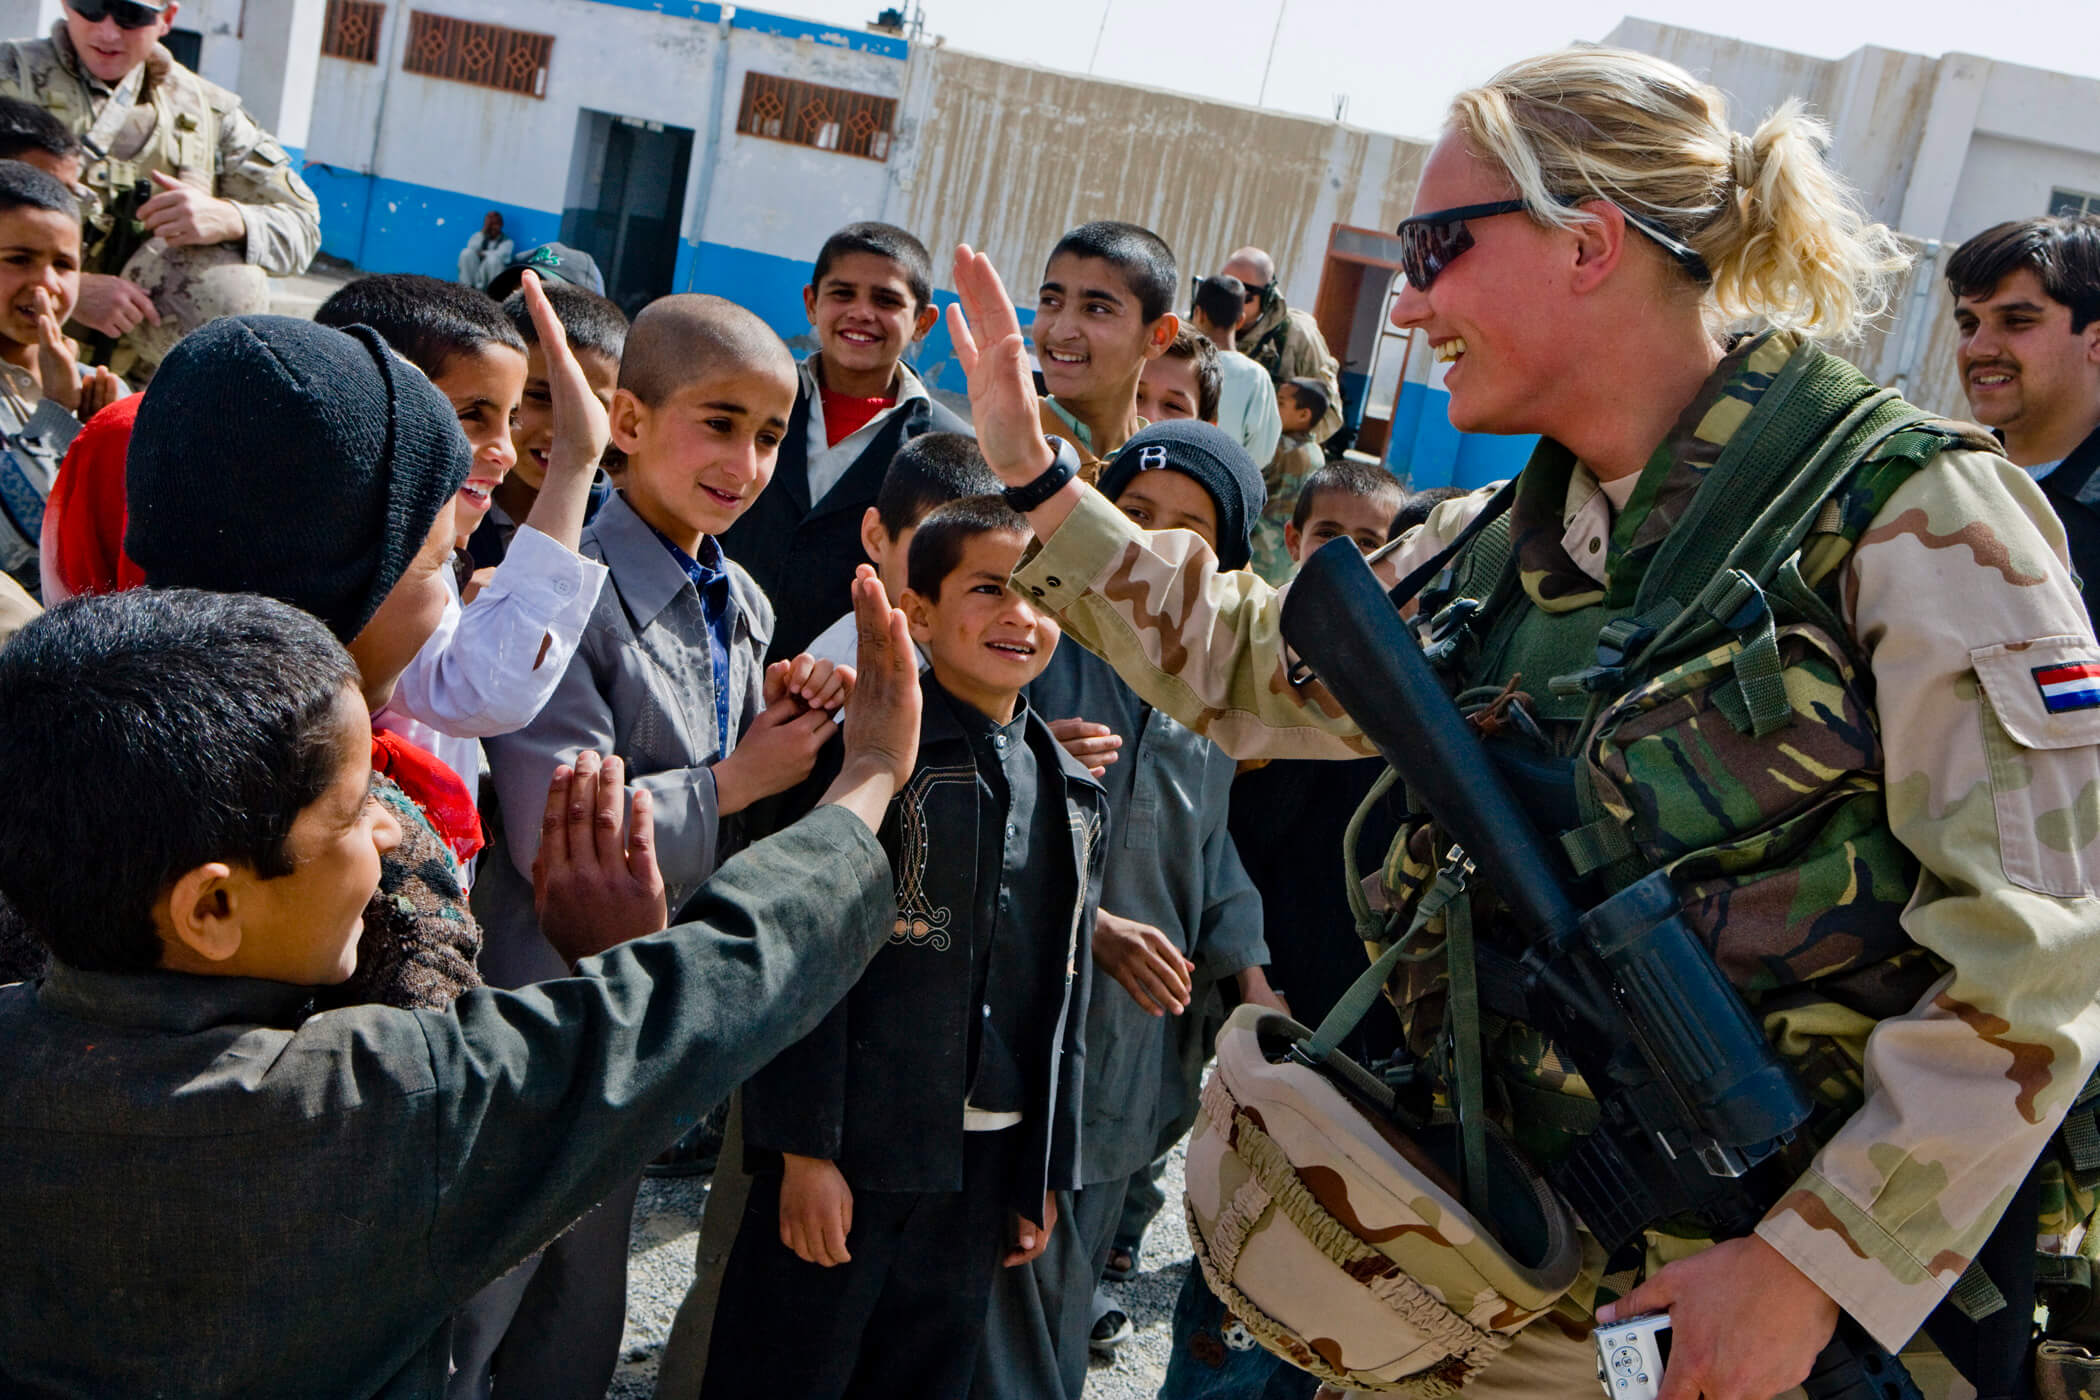 KammingaOppewal-art- Nederlandse ISAF-militair bij een Afghaans weeshuis in 2009. ResoluteSupportMedia - Flickr